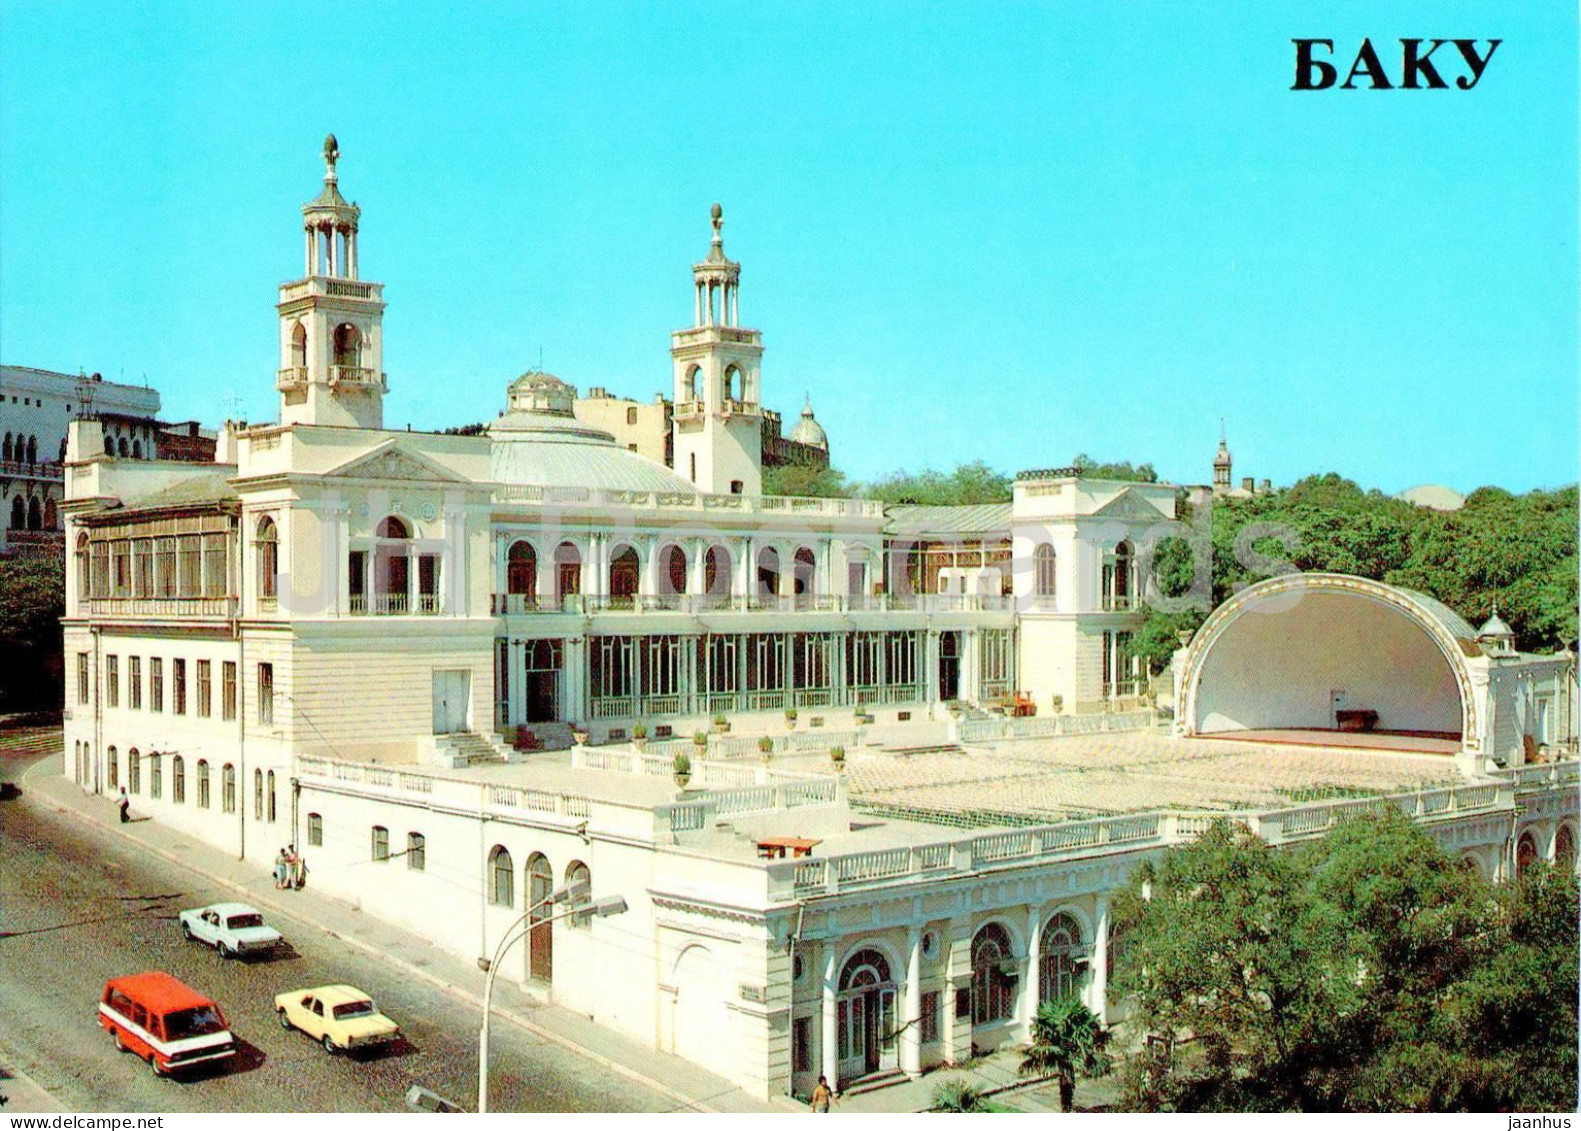 Baku - The Building Of The Azerbaijan State Philharmonic Society - Car - 1985 - Azerbaijan USSR - Unused - Azerbaigian